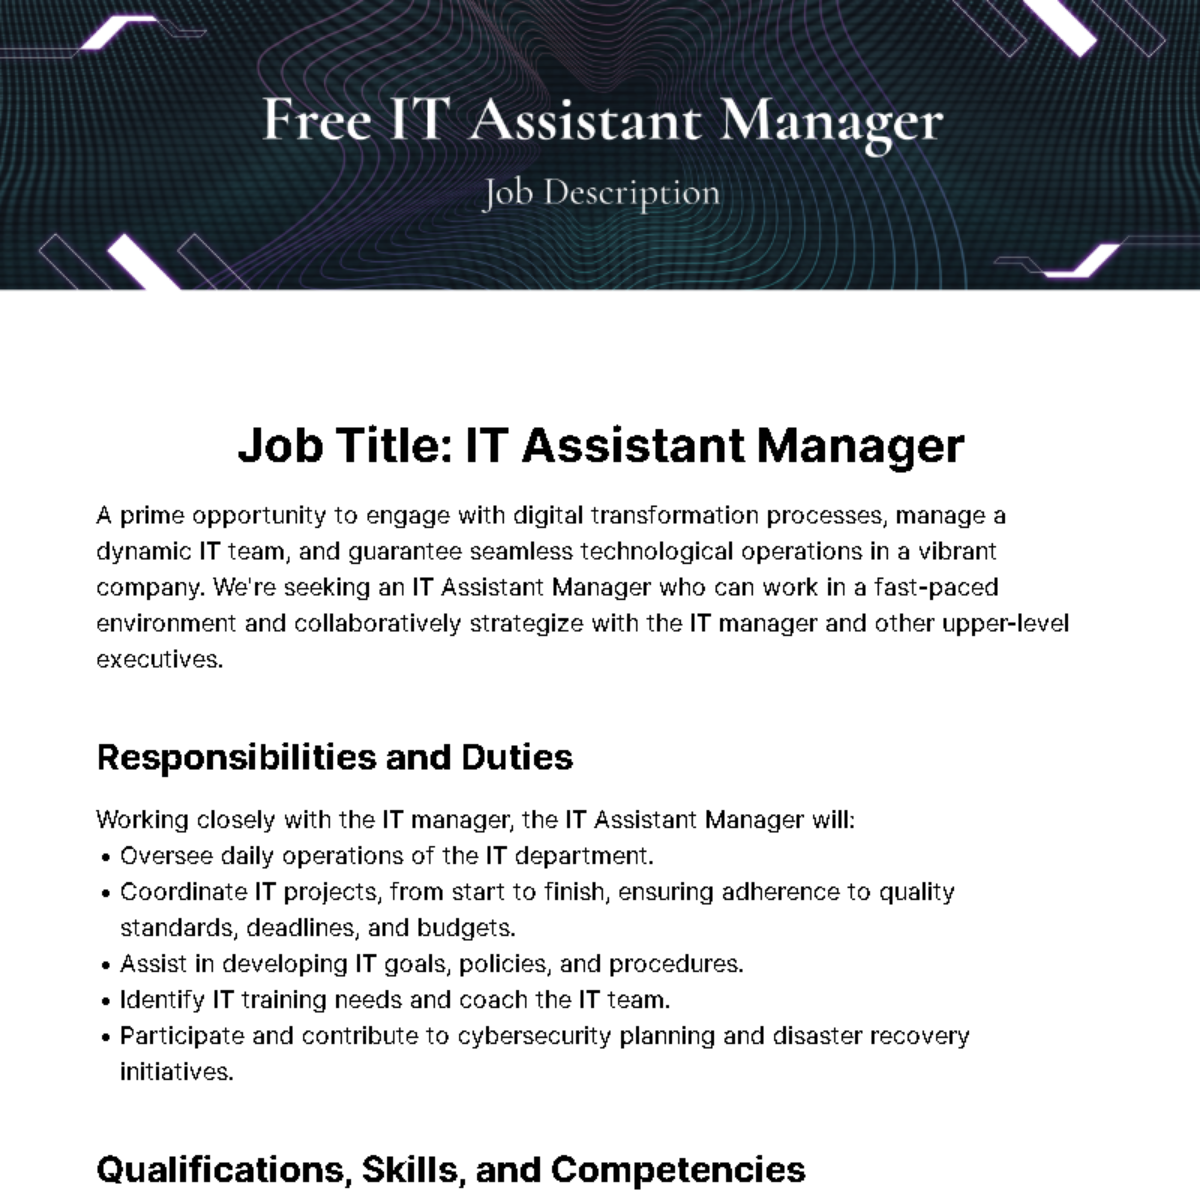 IT Assistant Manager Job Description Template